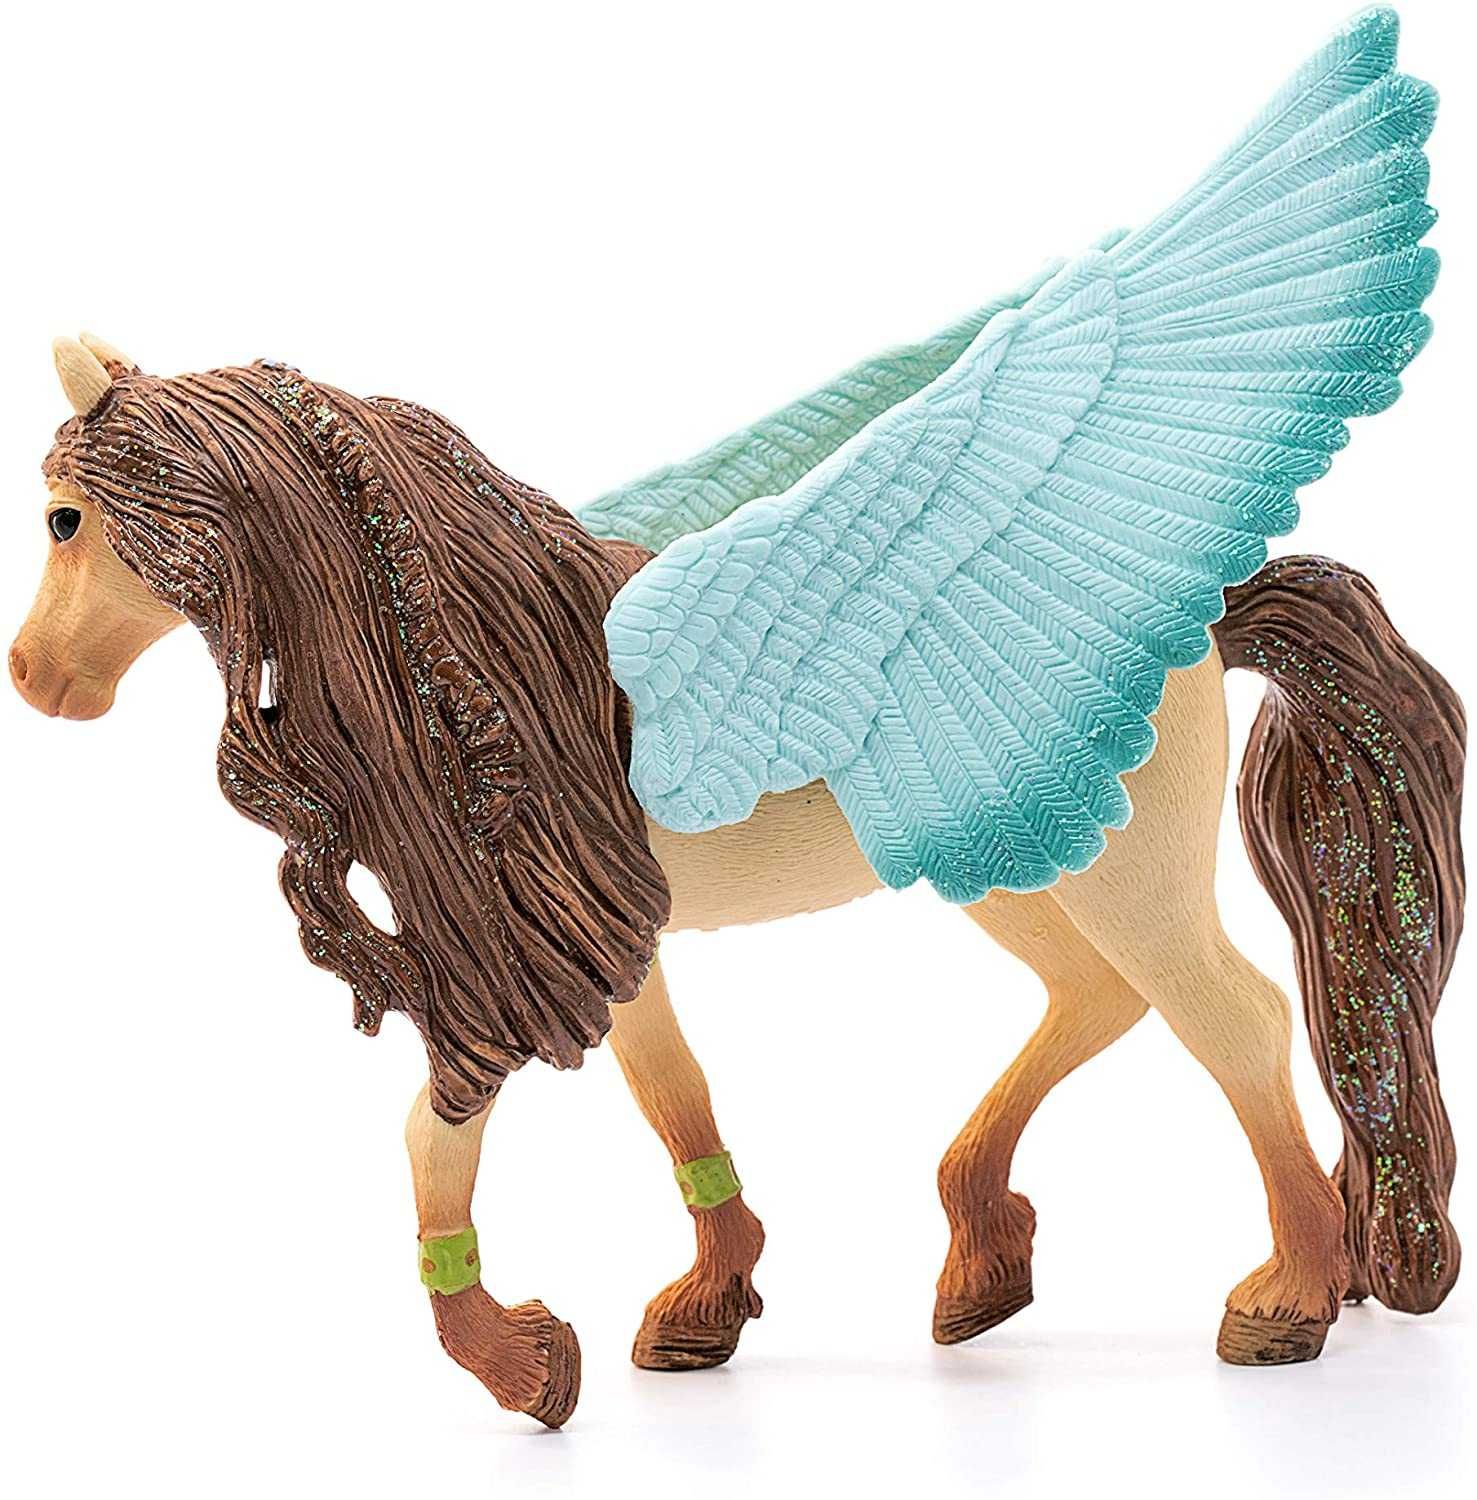 Armăsar Pegasus decorat - Figurina Schleich 70574